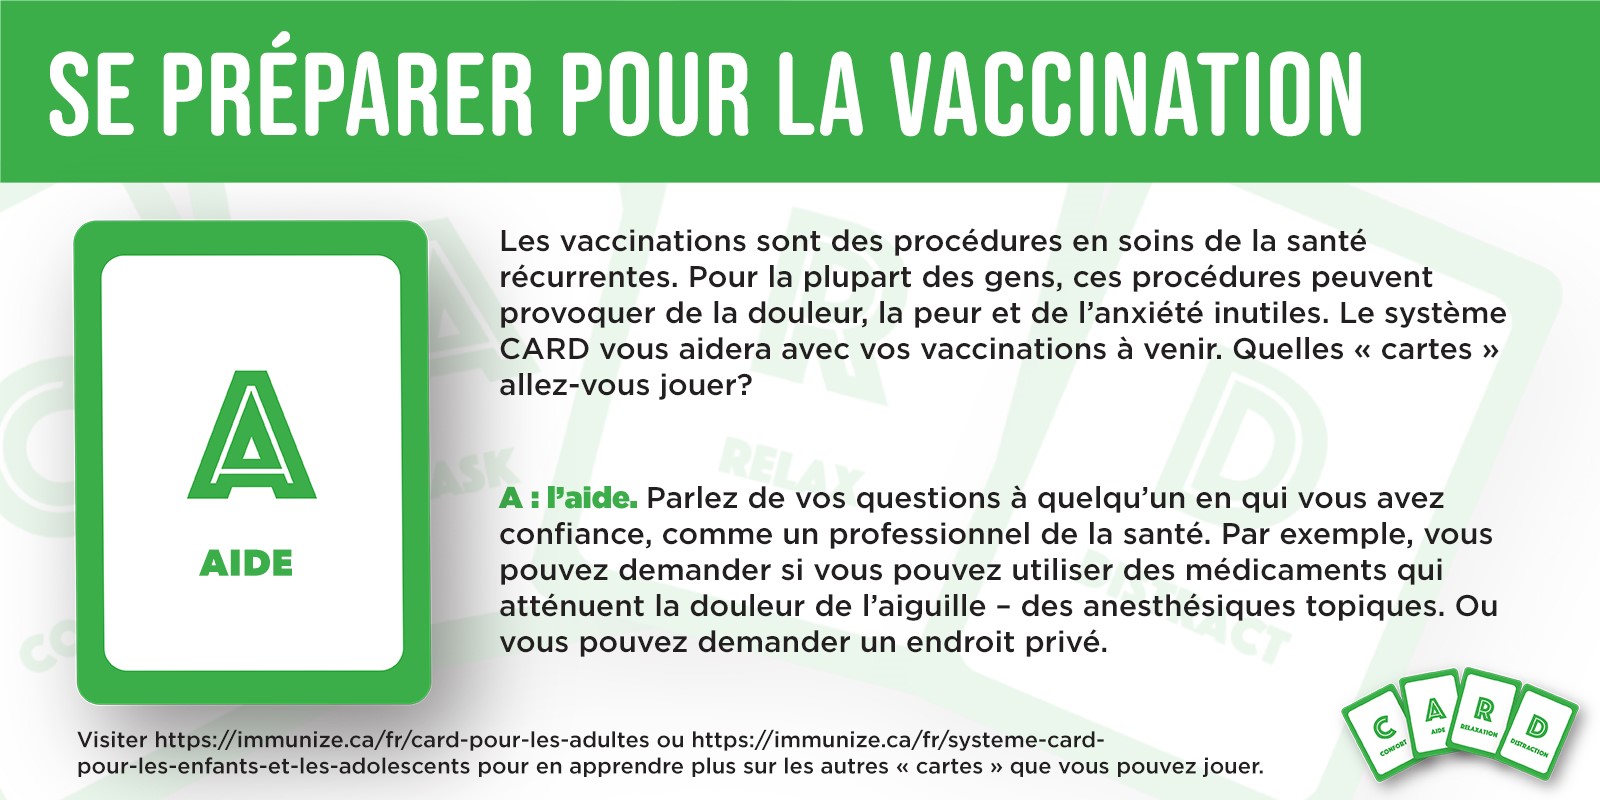 Se préparer pour la vaccination : Aide